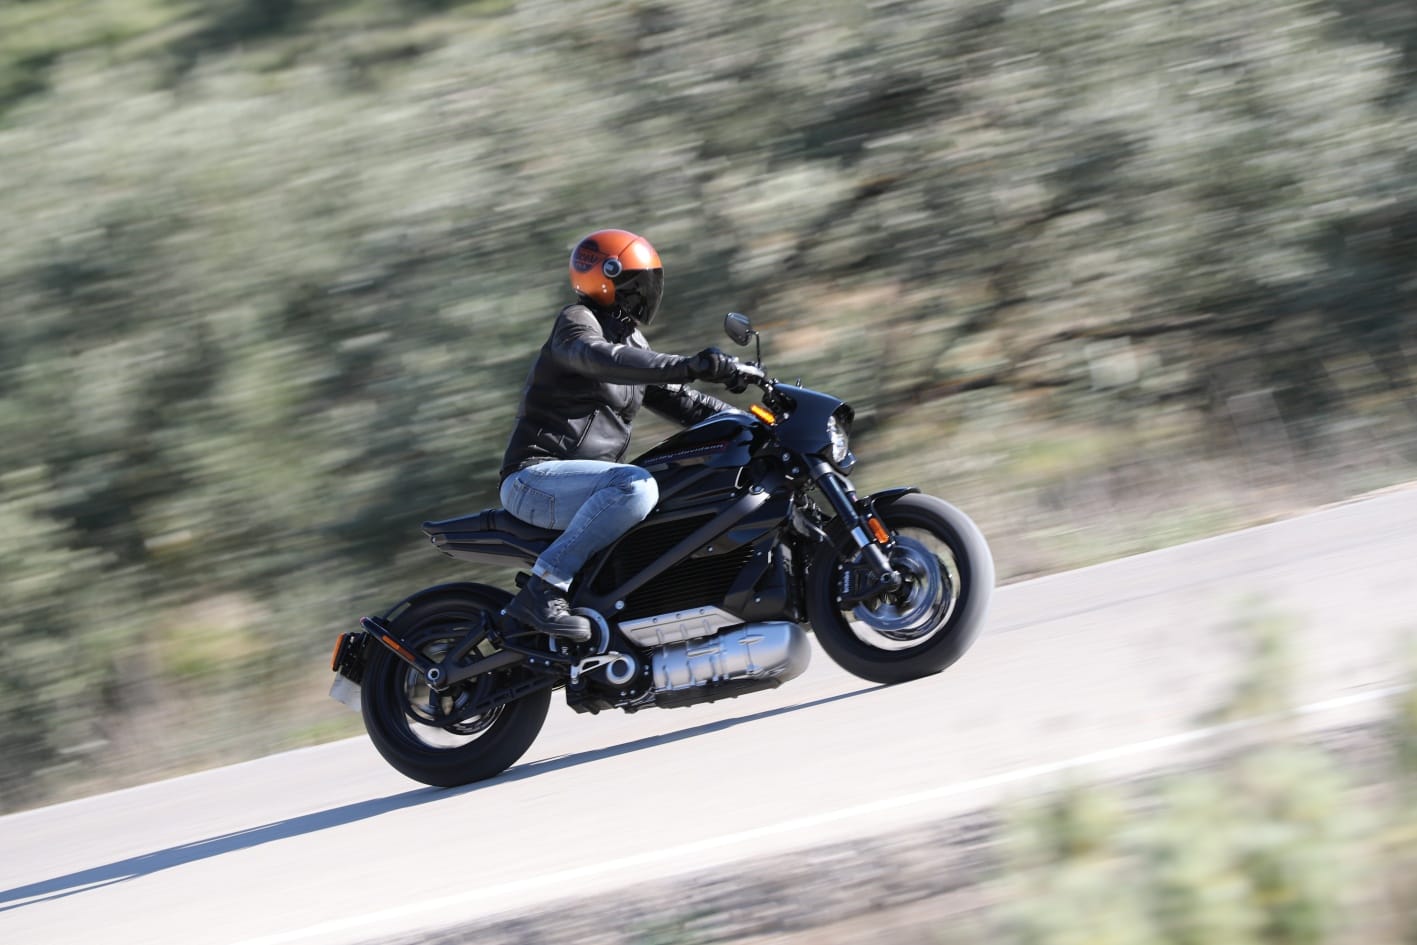 Harley-Davidson LiveWire: Leider sehr teuer, aber optisch und technisch überzeugt die erste Elektro-Harley (105 PS) auf ganzer Linie. Strom soll es beim Harley-Händler gratis geben. Preis: ab 32.995 Euro.